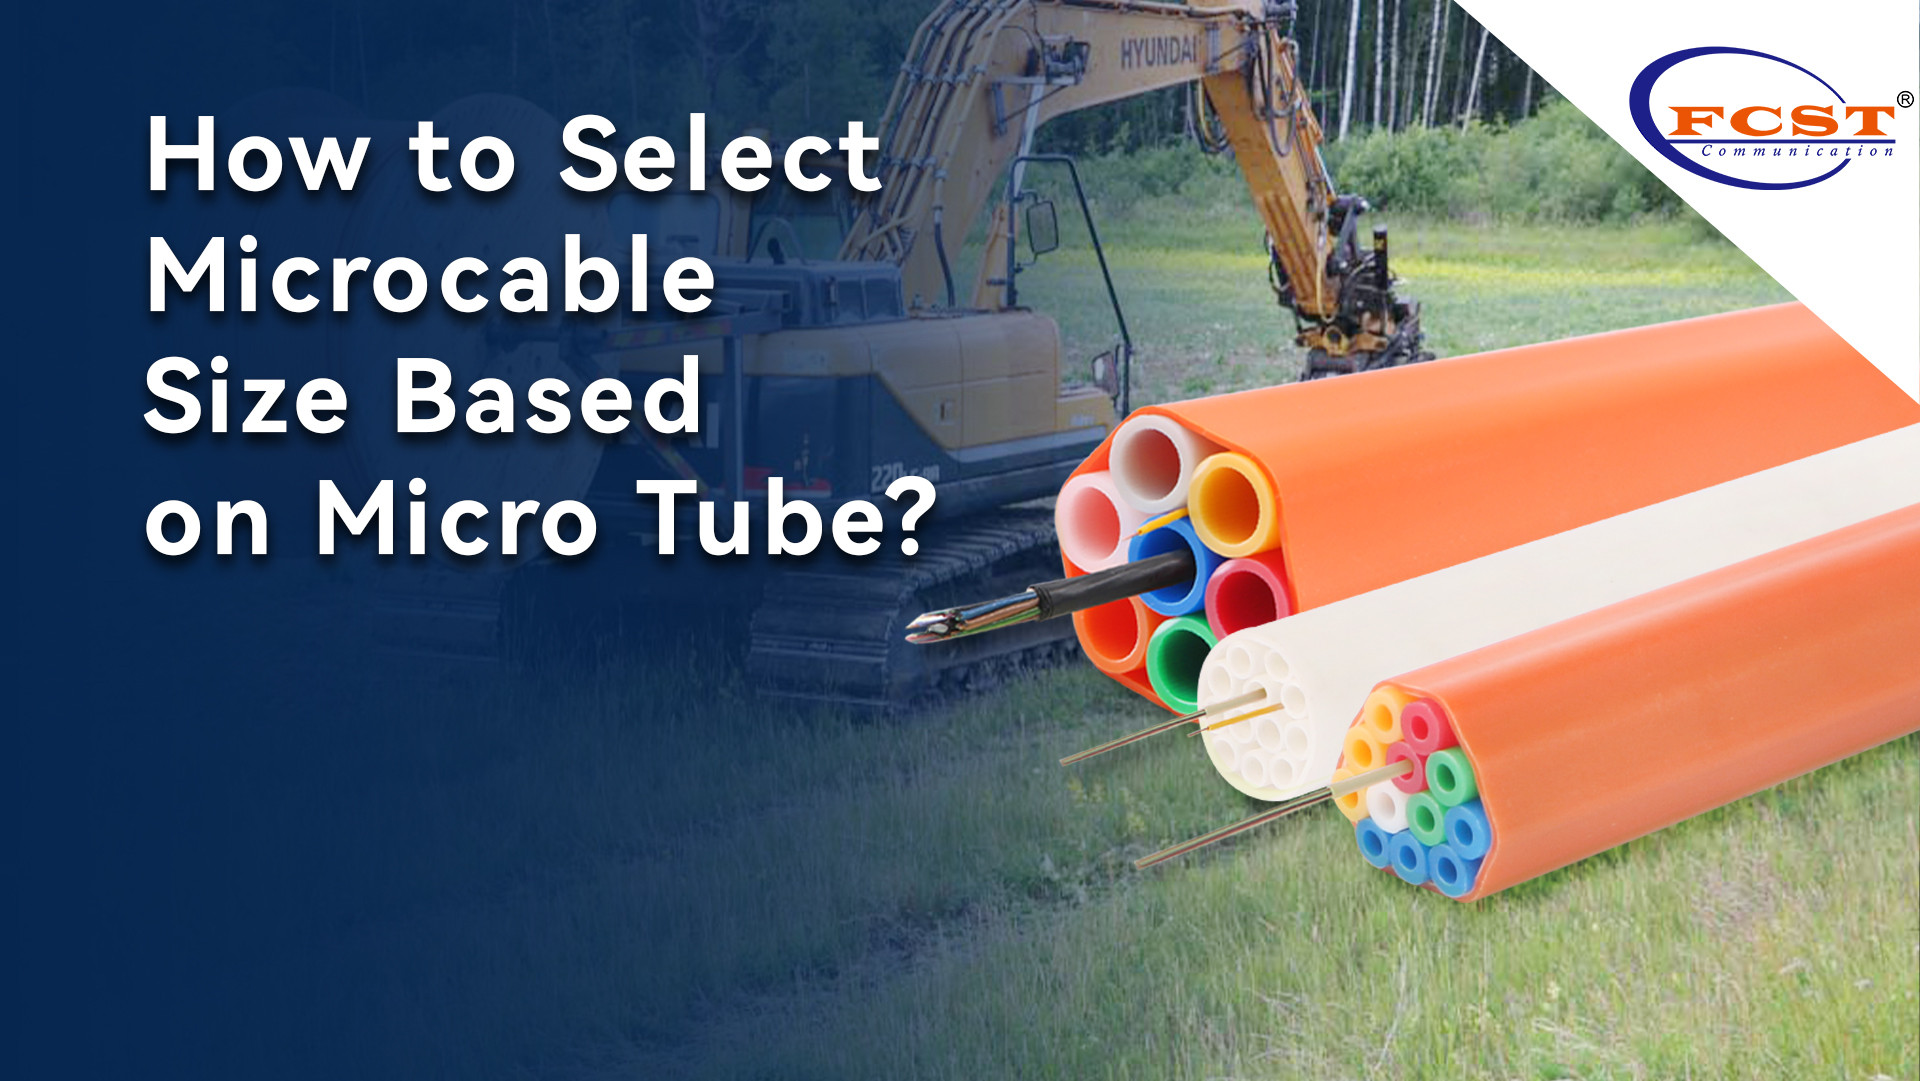 ¿Cómo seleccionar un tamaño microcable basado en micro tubo?